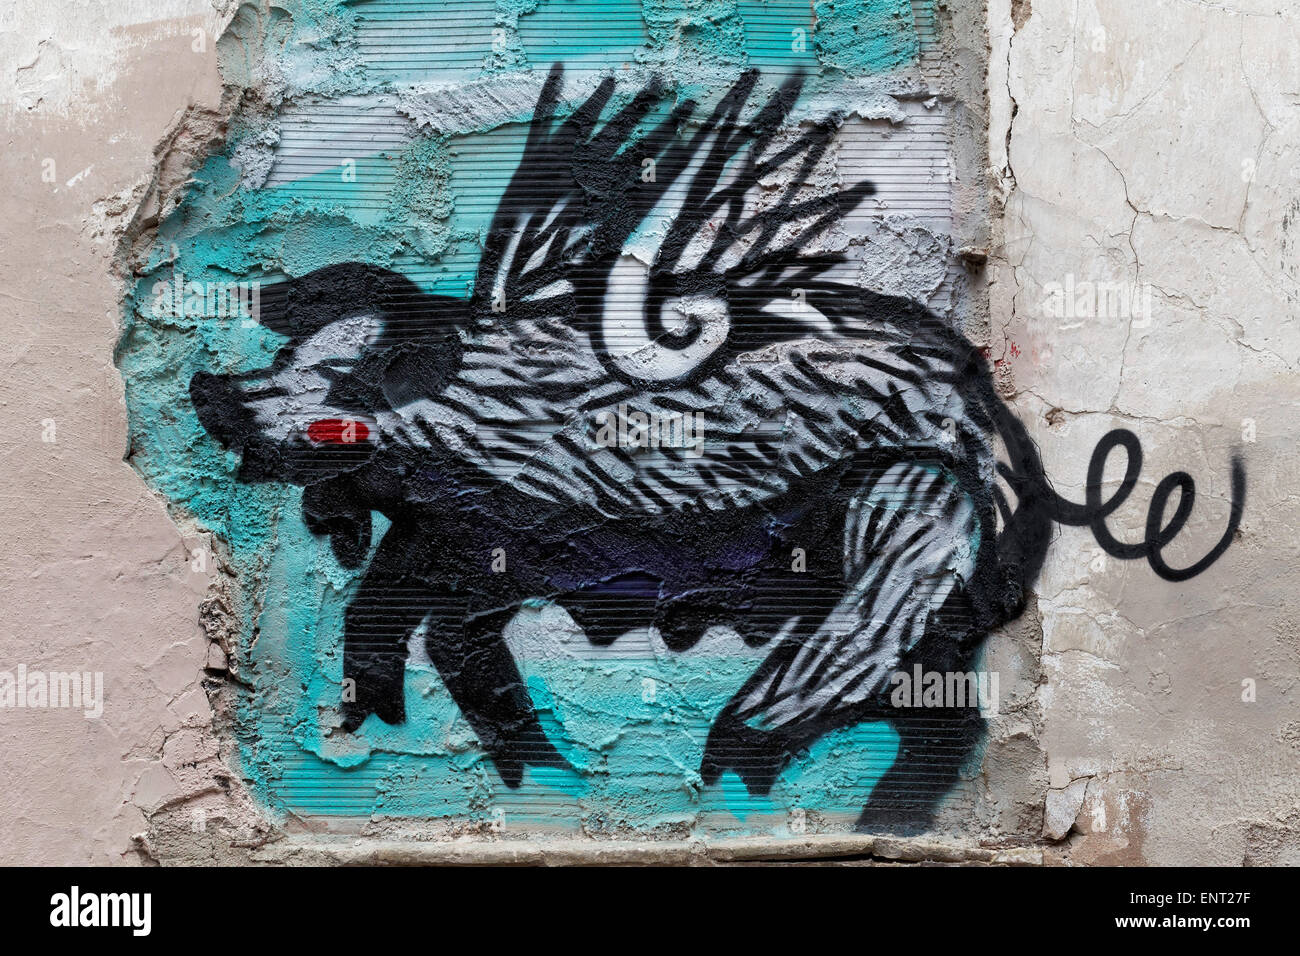 Pig with wings, surreal mural, street art, Palma de Majorca, Majorca, Balearic Islands, Spain Stock Photo